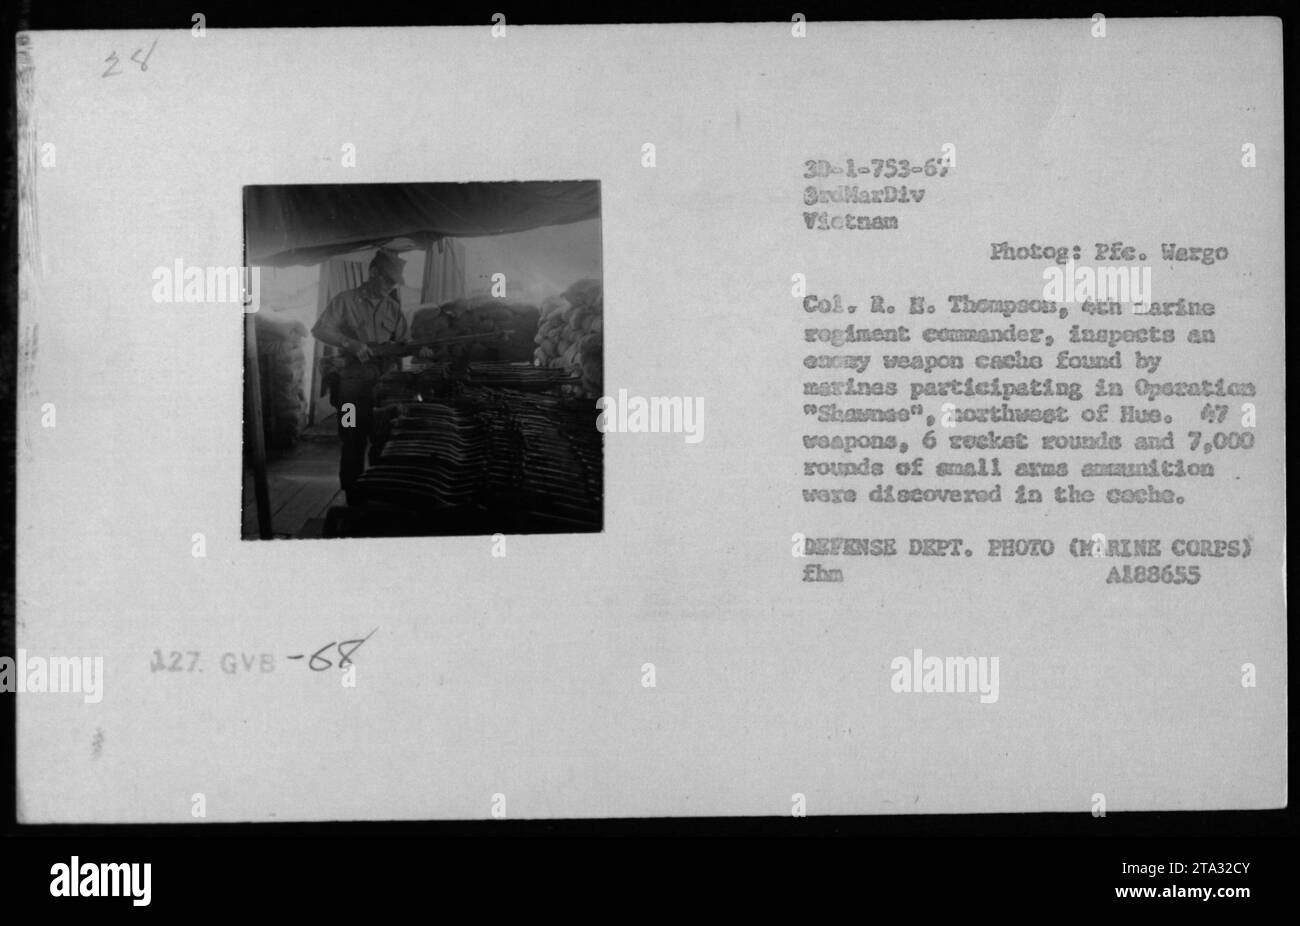 Colonel R. E. Thompson, Kommandeur des 4. Marine-Regiments, inspiziert ein Lager feindlicher Waffen, die von Marines während der Operation Shawnee nordwestlich von Hue 1967 gefunden wurden. Das Lager umfasste 47 Waffen, 6 Raketengeschosse und 7.000 Schüsse Kleinwaffenmunition. Foto des Verteidigungsministeriums vom Marine Corps. Identifikationsnummer: GVB-68 30-1-753-67, Foto: PFC. Wergo Stockfoto